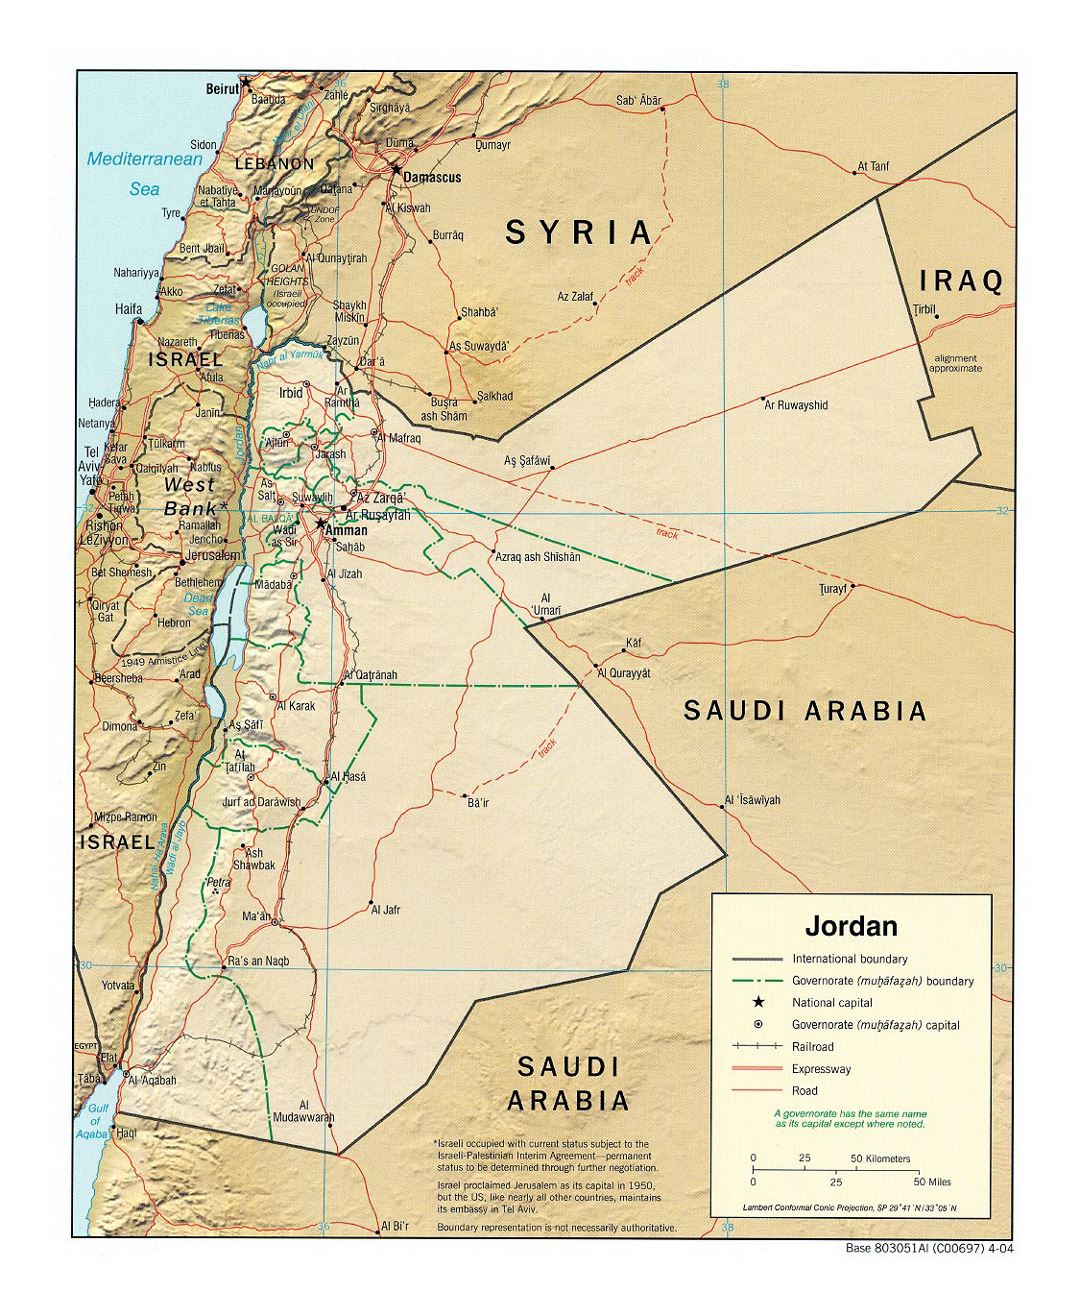 Detallado mapa político y administrativo de Jordania con socorro, carreteras, ferrocarriles y principales ciudades - 2004